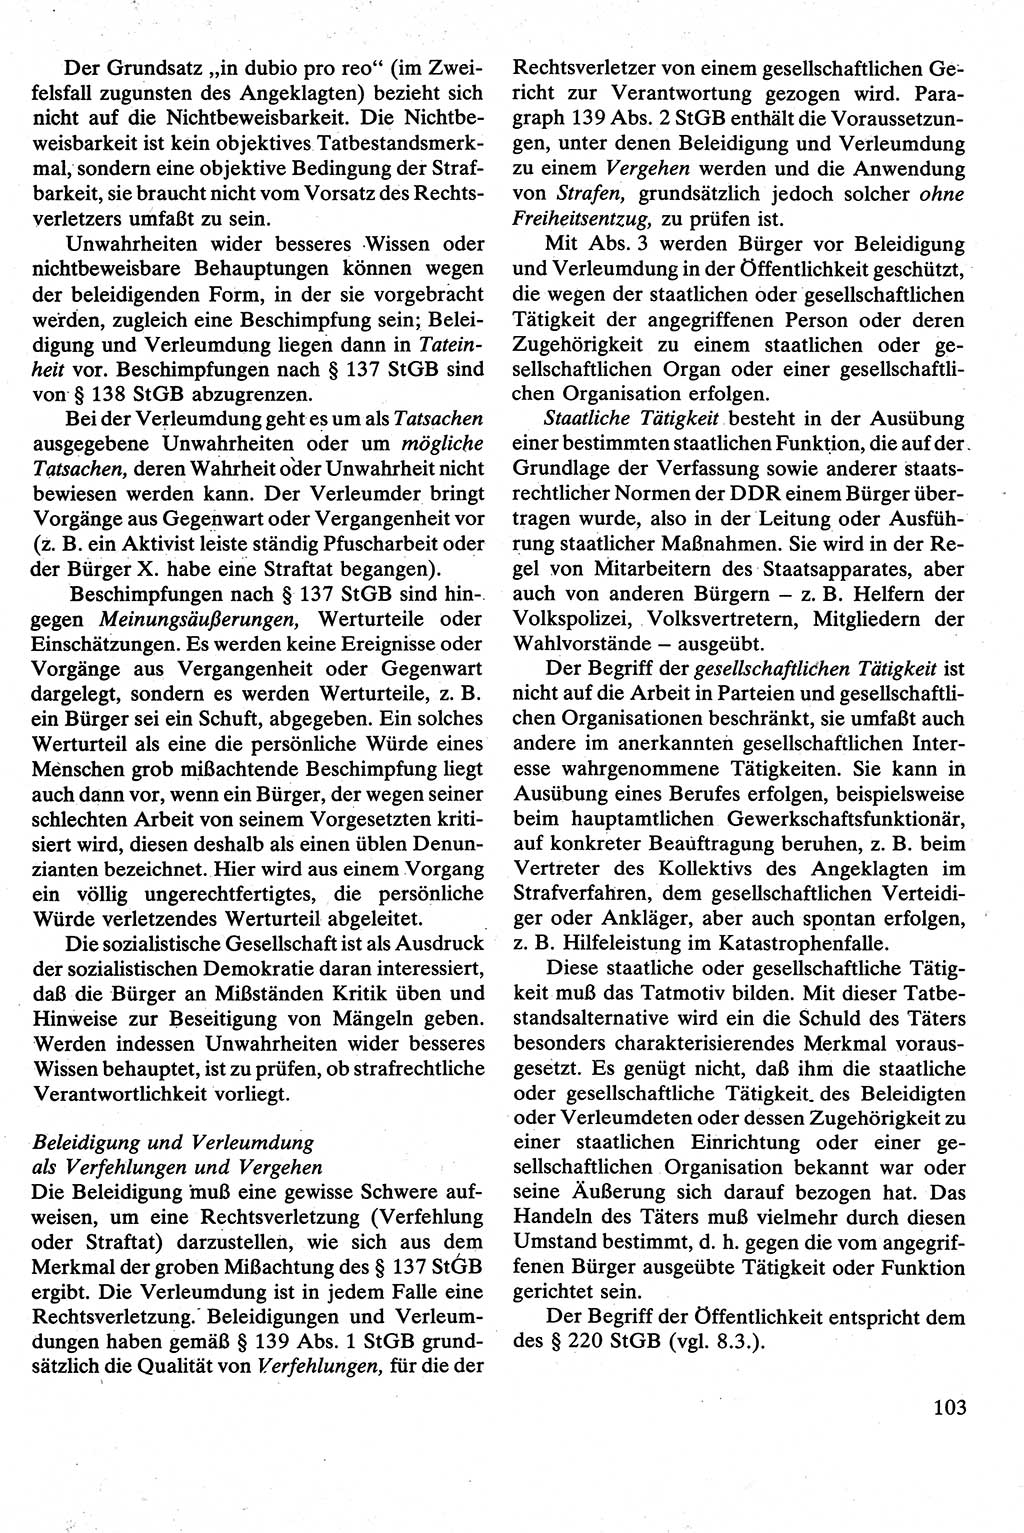 Strafrecht [Deutsche Demokratische Republik (DDR)], Besonderer Teil, Lehrbuch 1981, Seite 103 (Strafr. DDR BT Lb. 1981, S. 103)